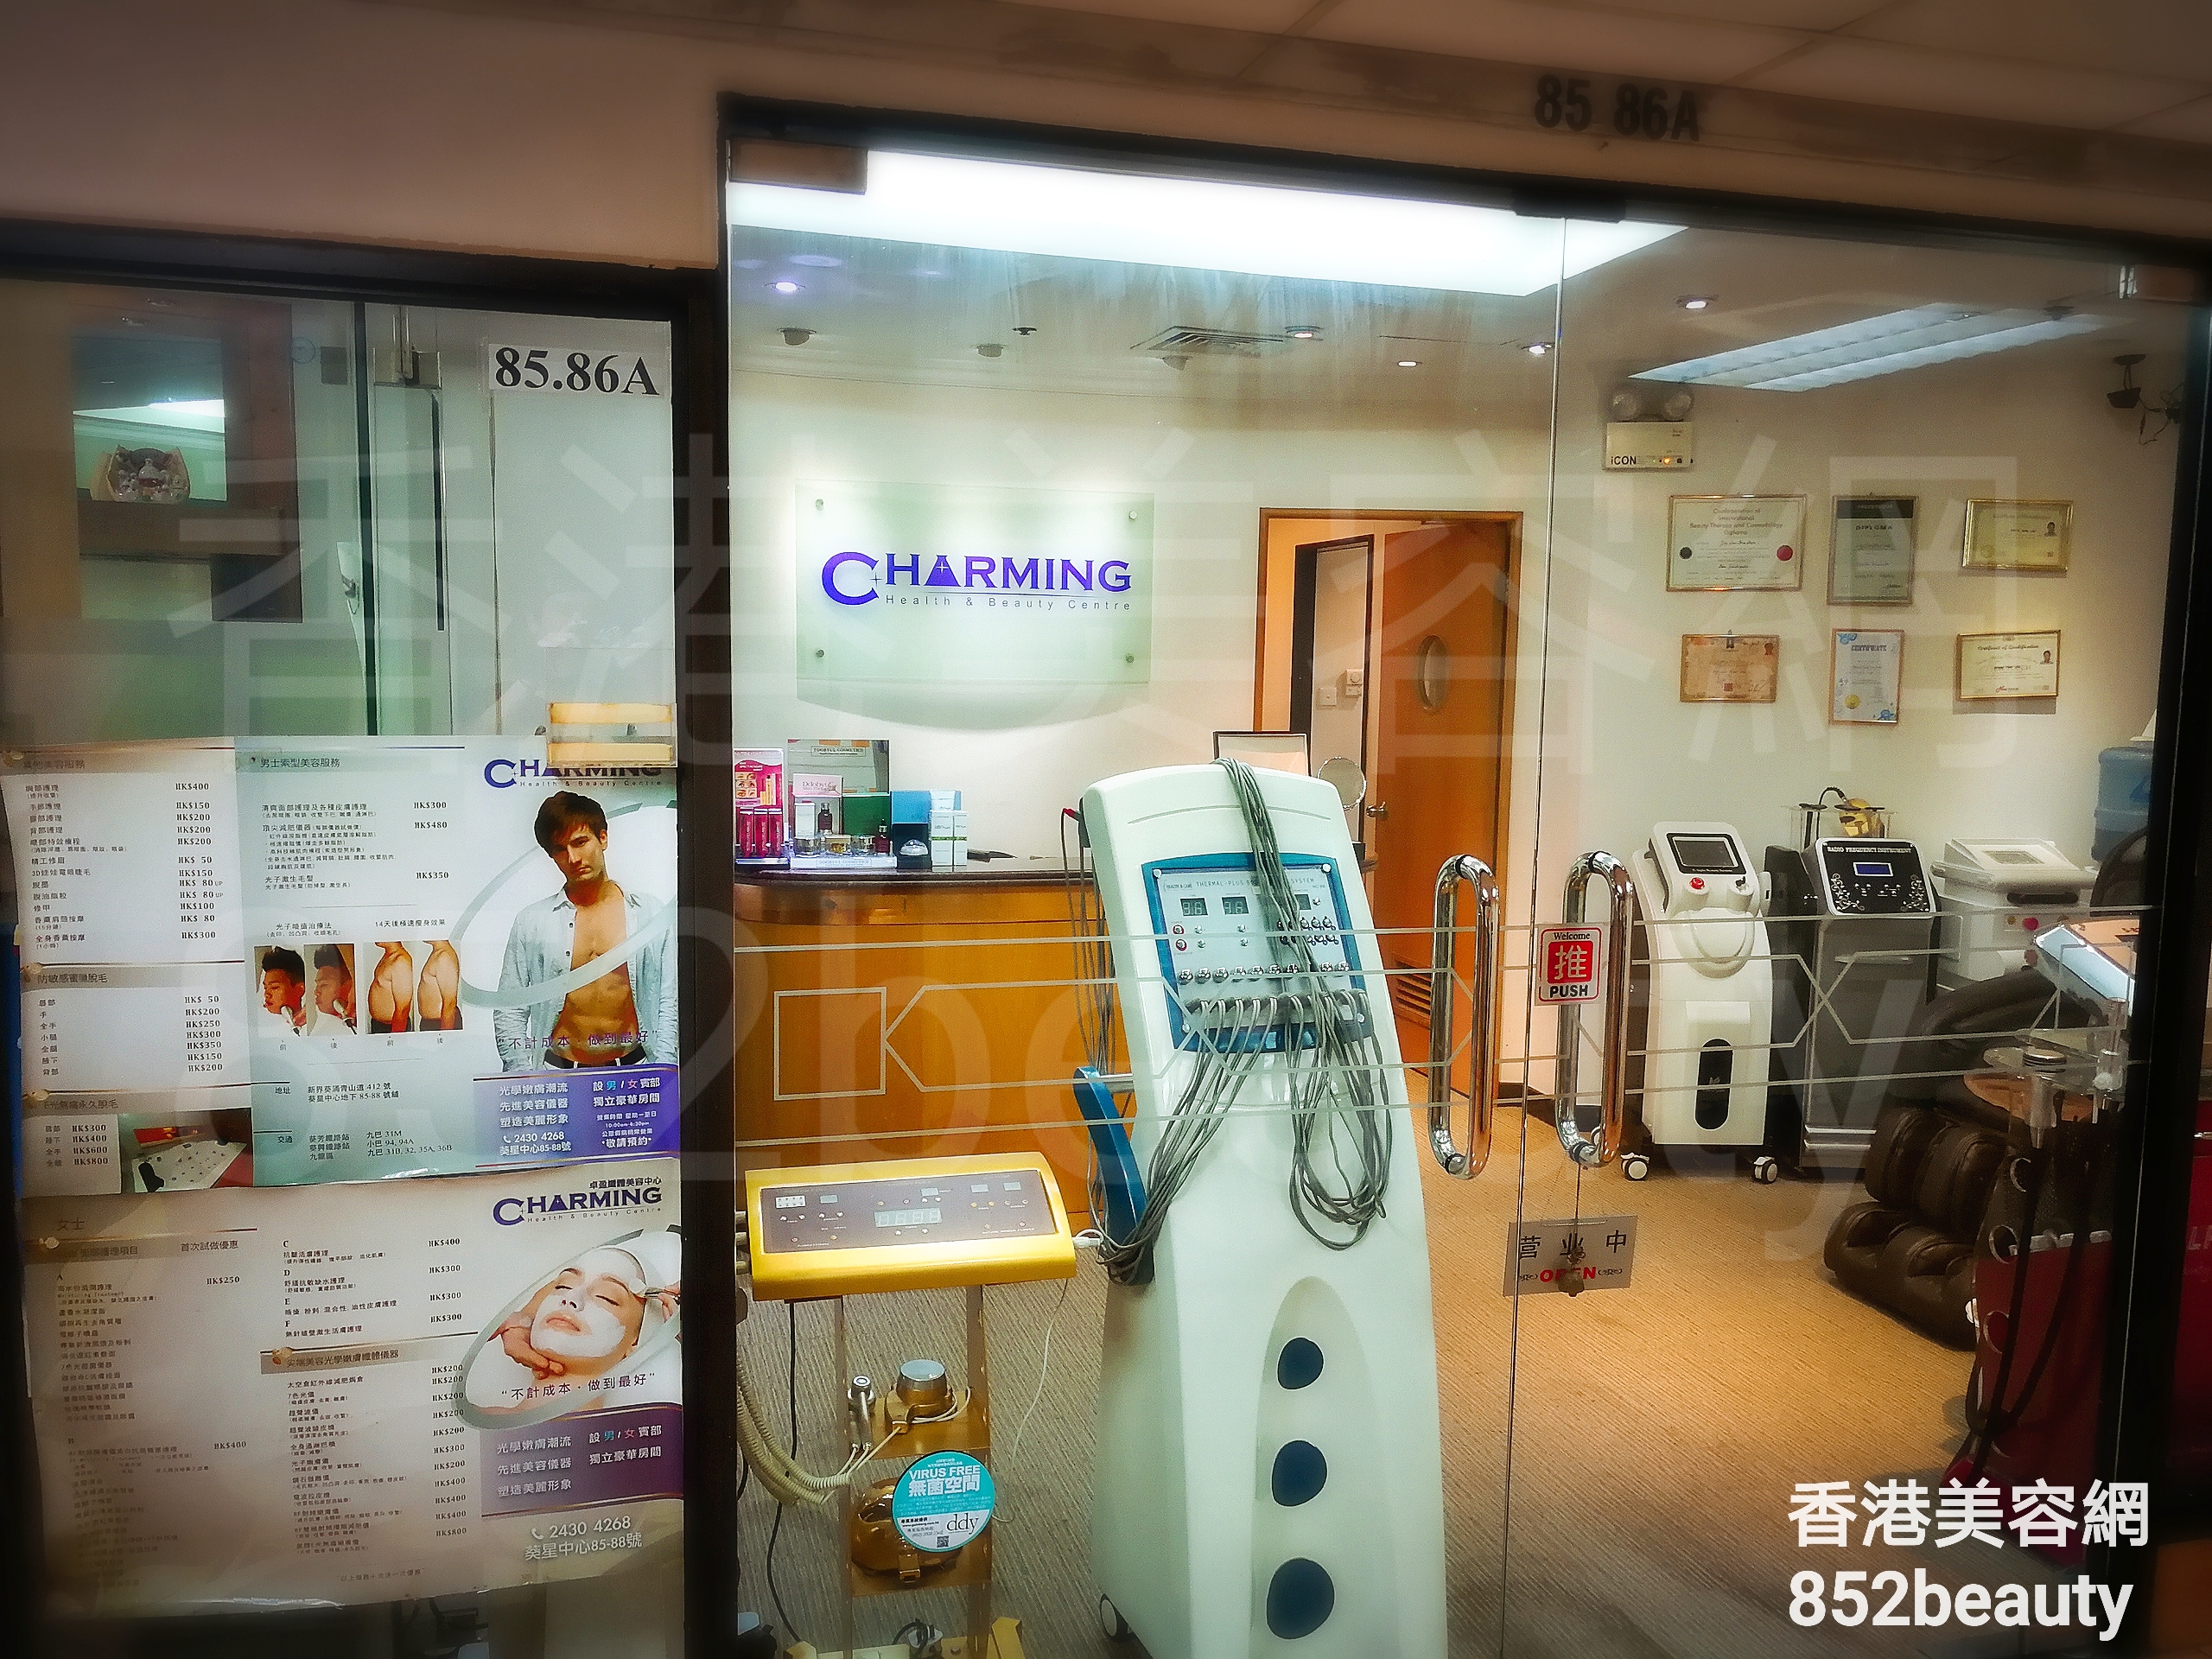 光學美容: Charming Health & Beauty Centre